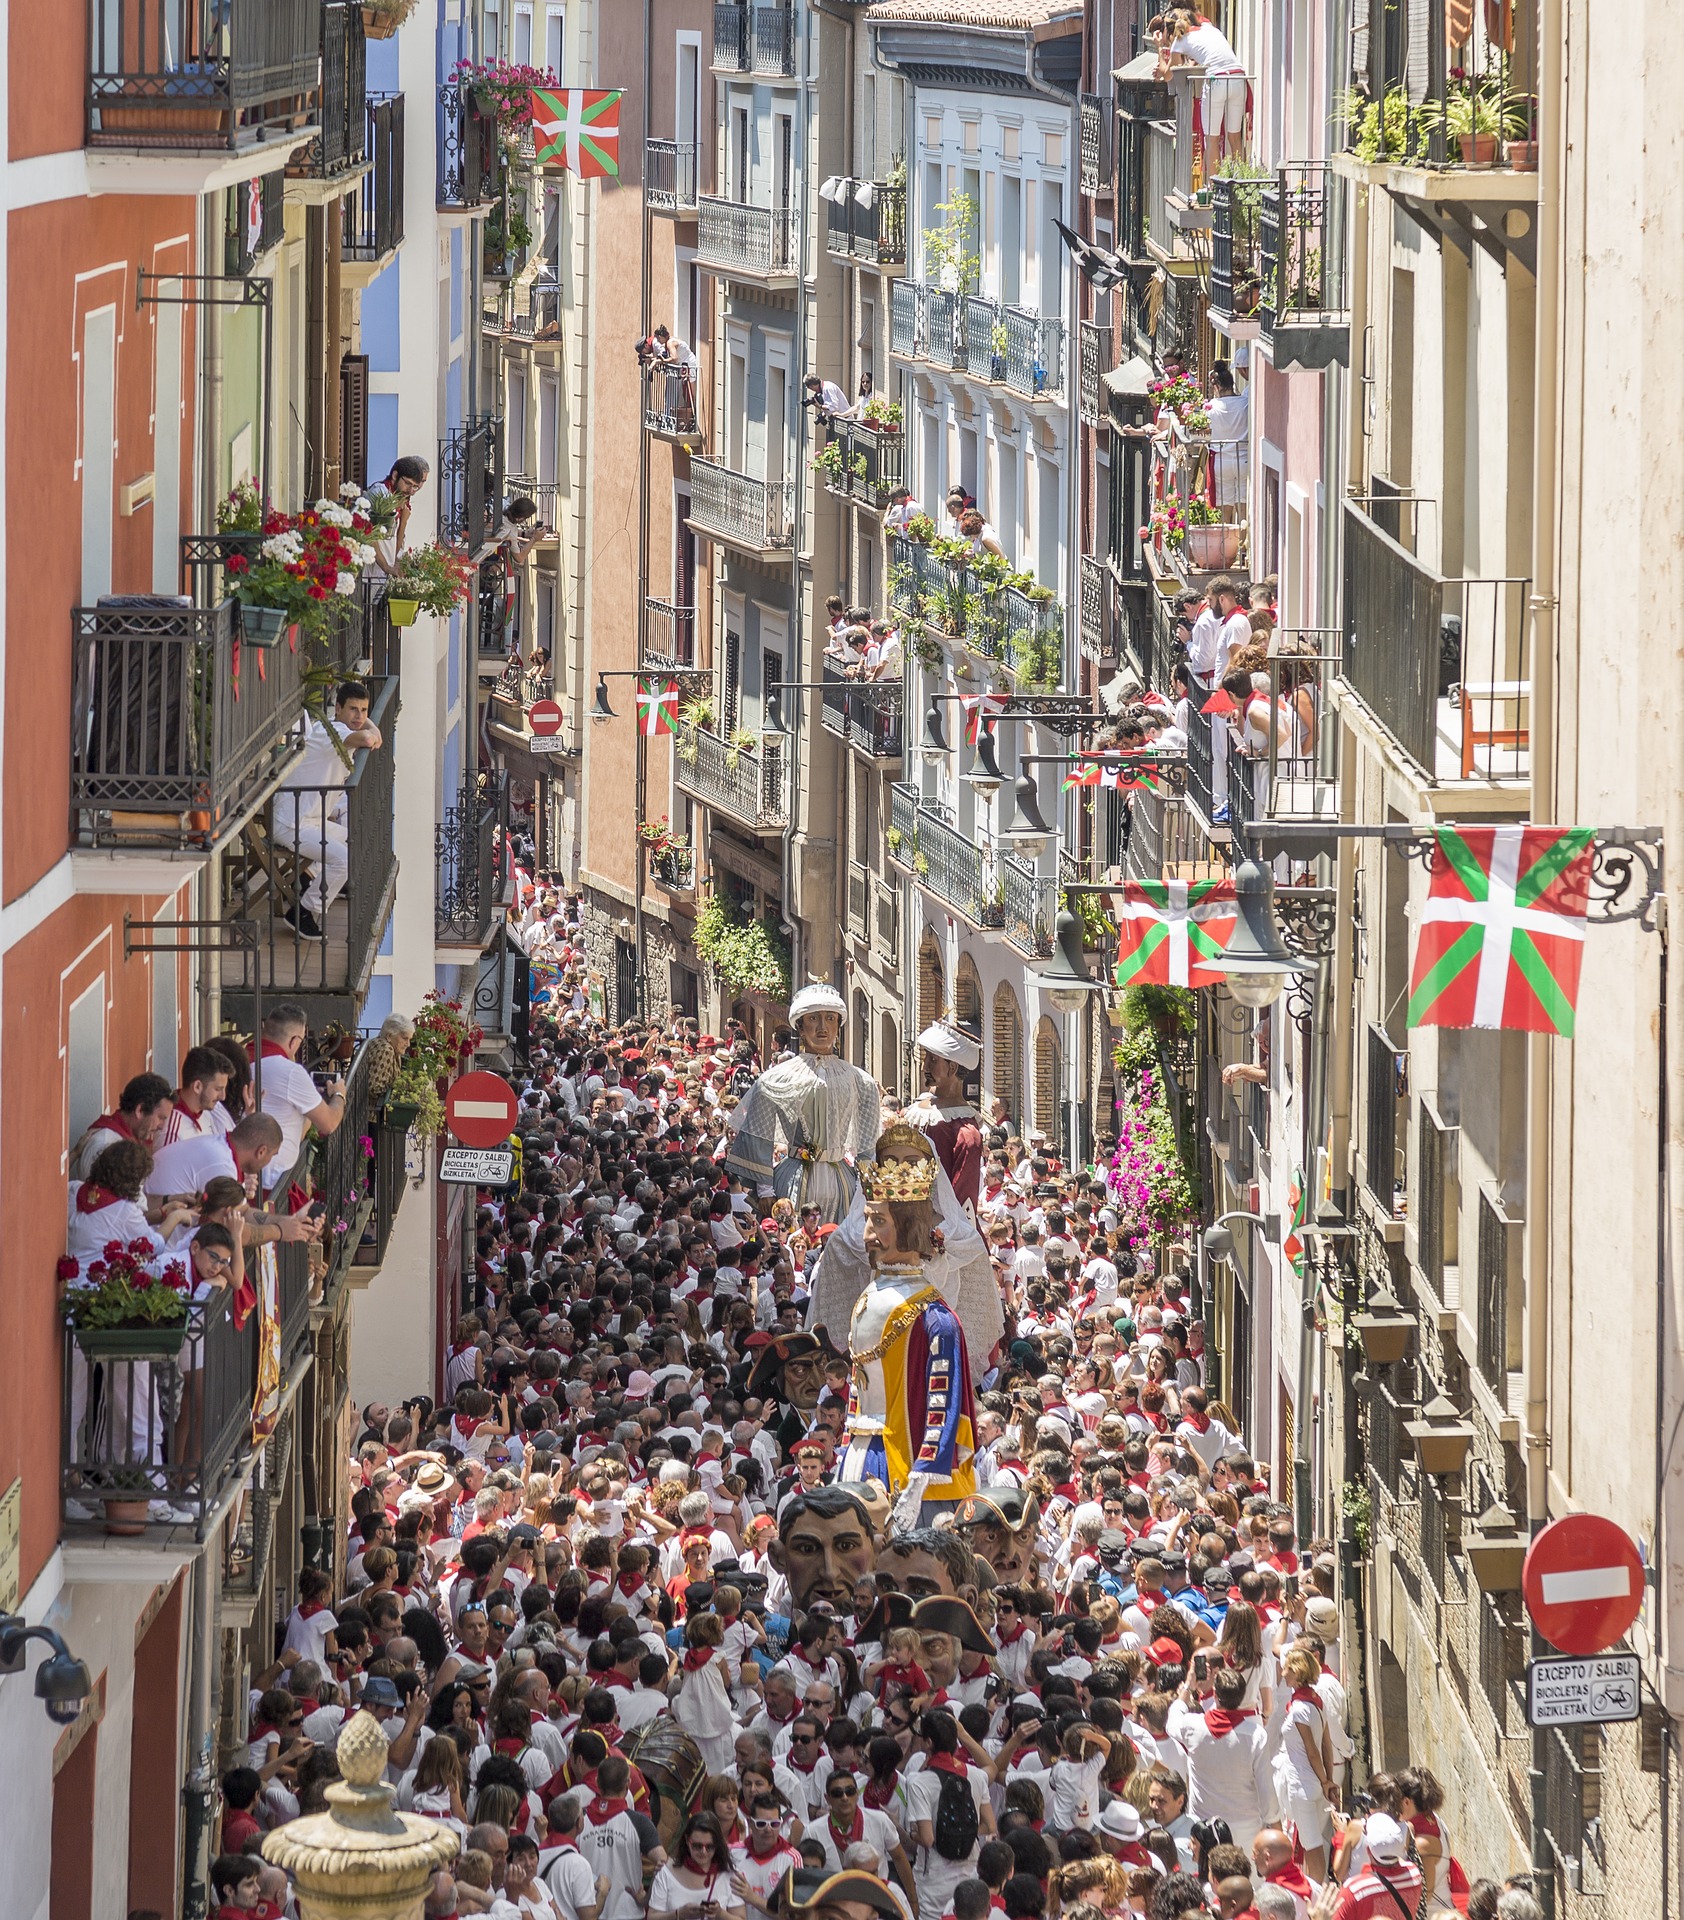 crowds in Spain